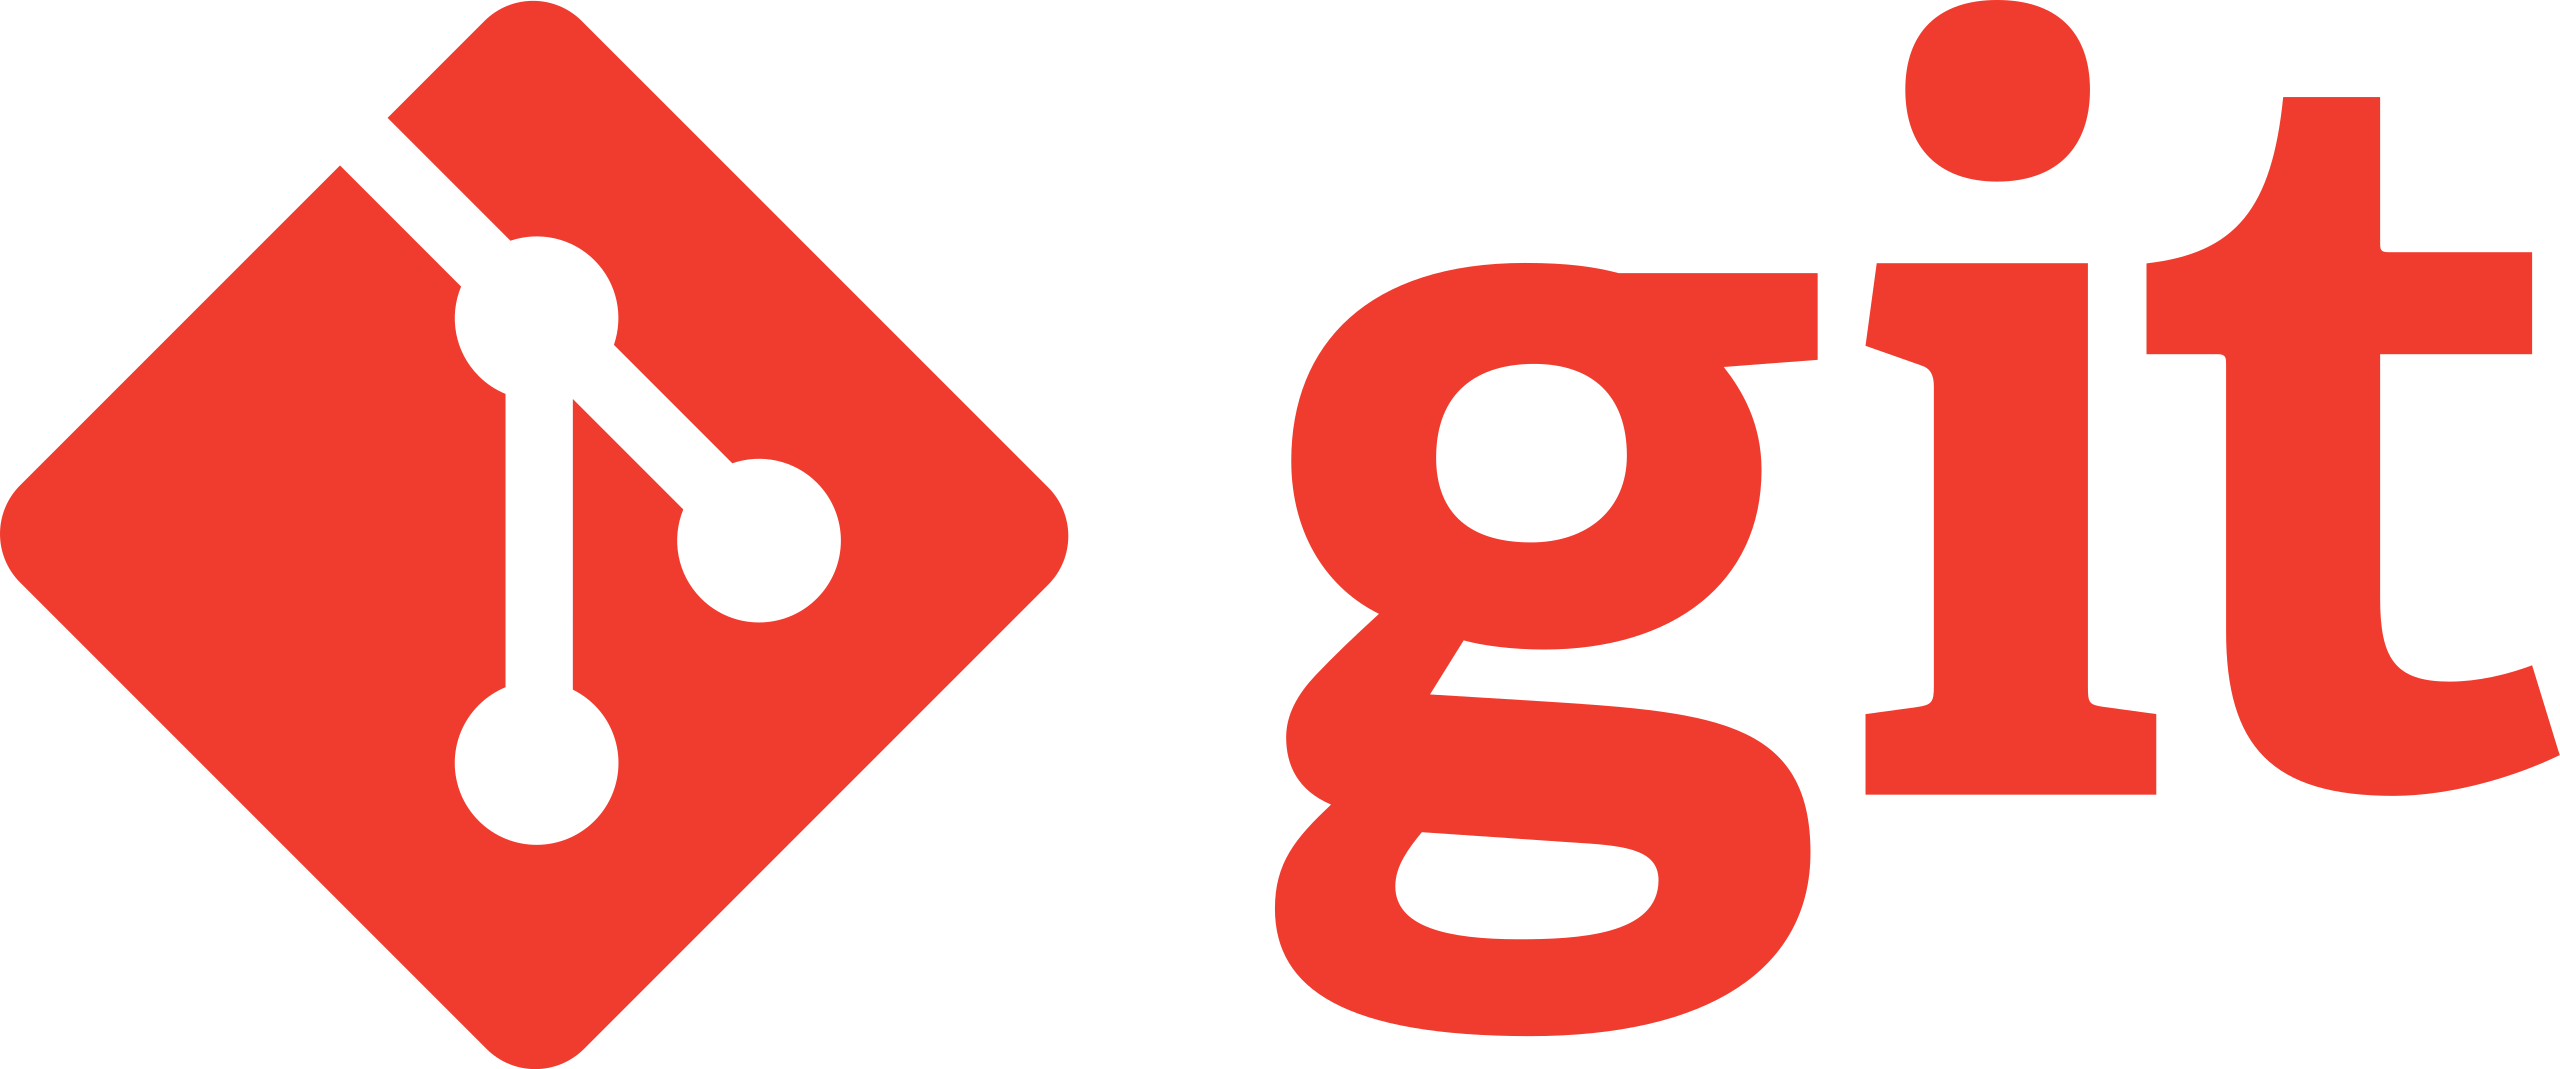 Git and Github logo